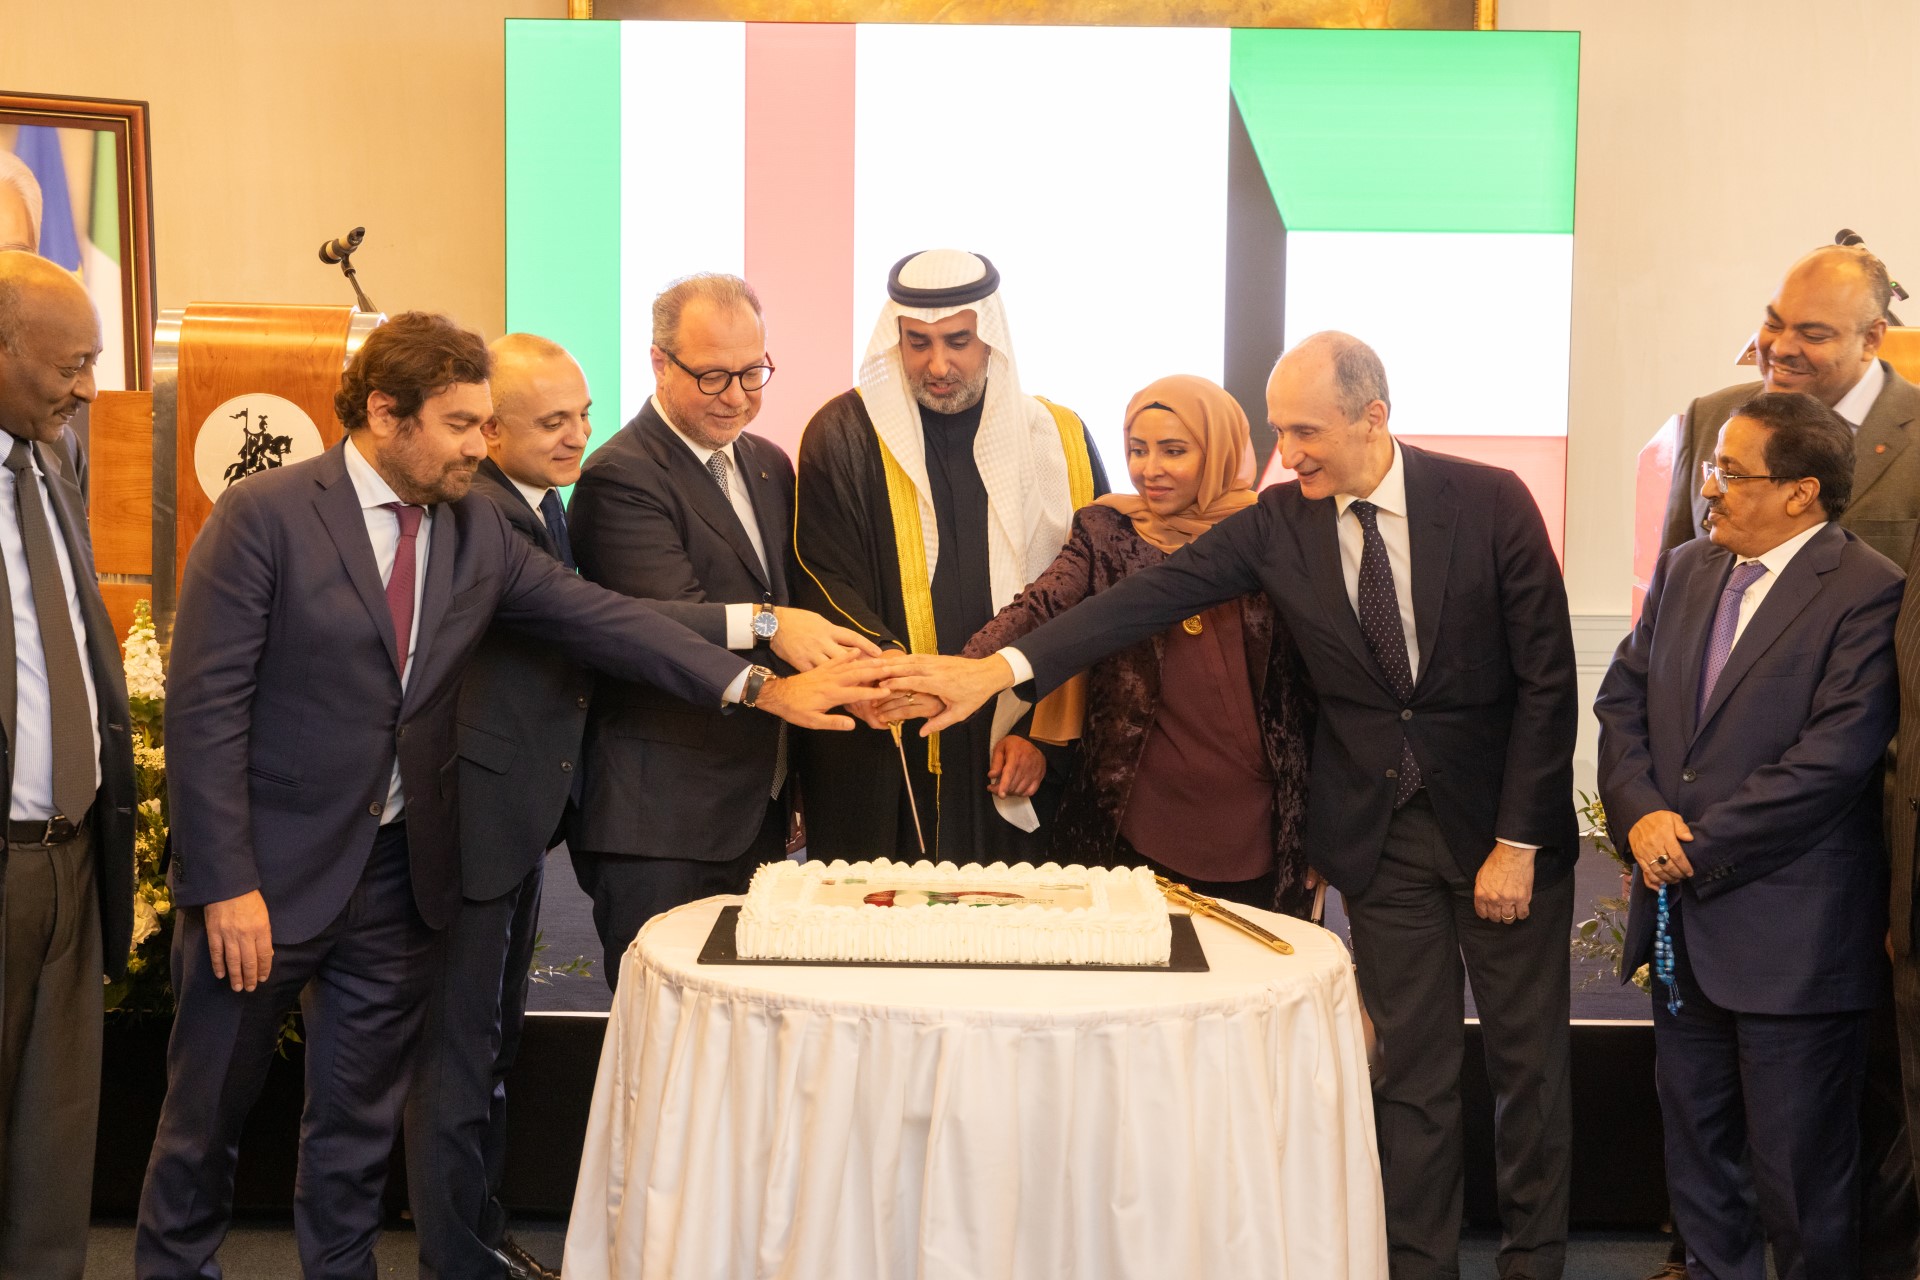 Italian official lauds Kuwait role in regional, global stability